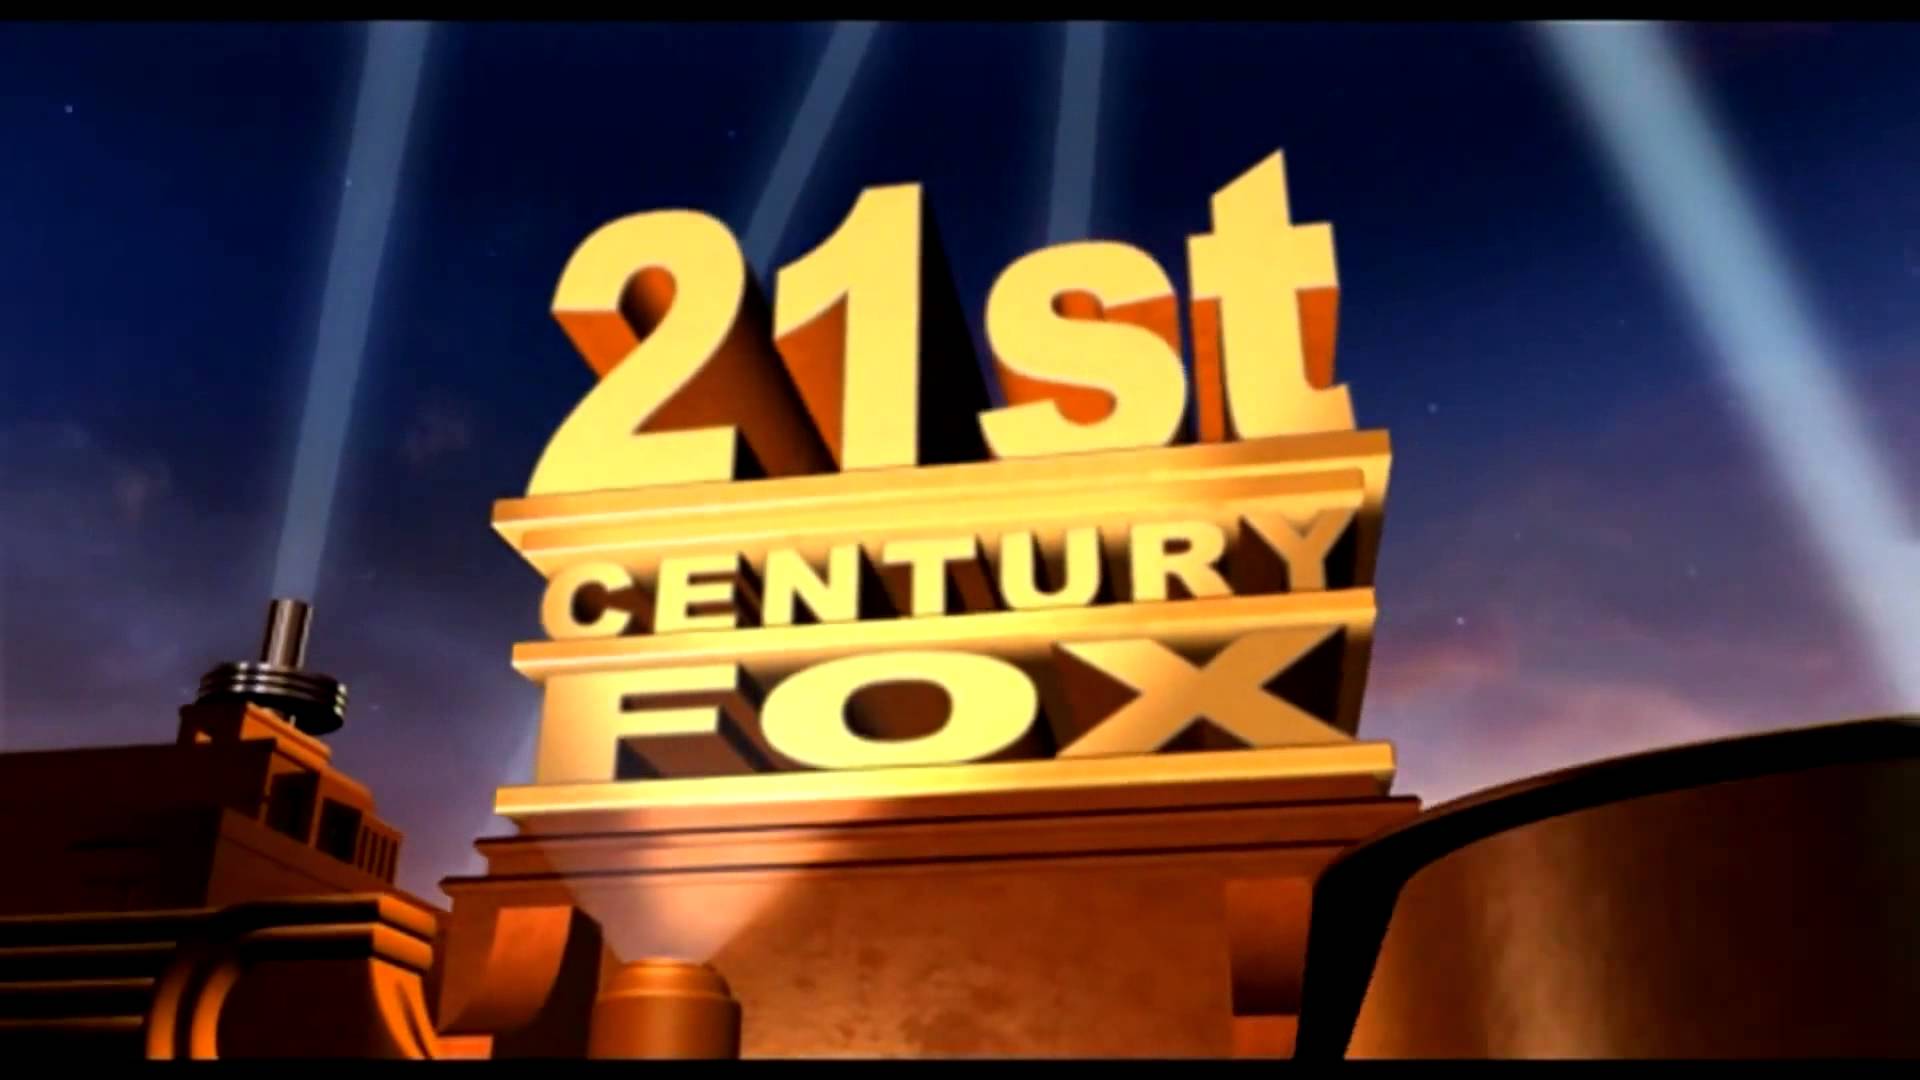 Twenty first century. Киностудия 21 век Фокс. 21st Century Fox проекты. 20 Век Фокс Лос Анджелес. 20th Century Fox 701.